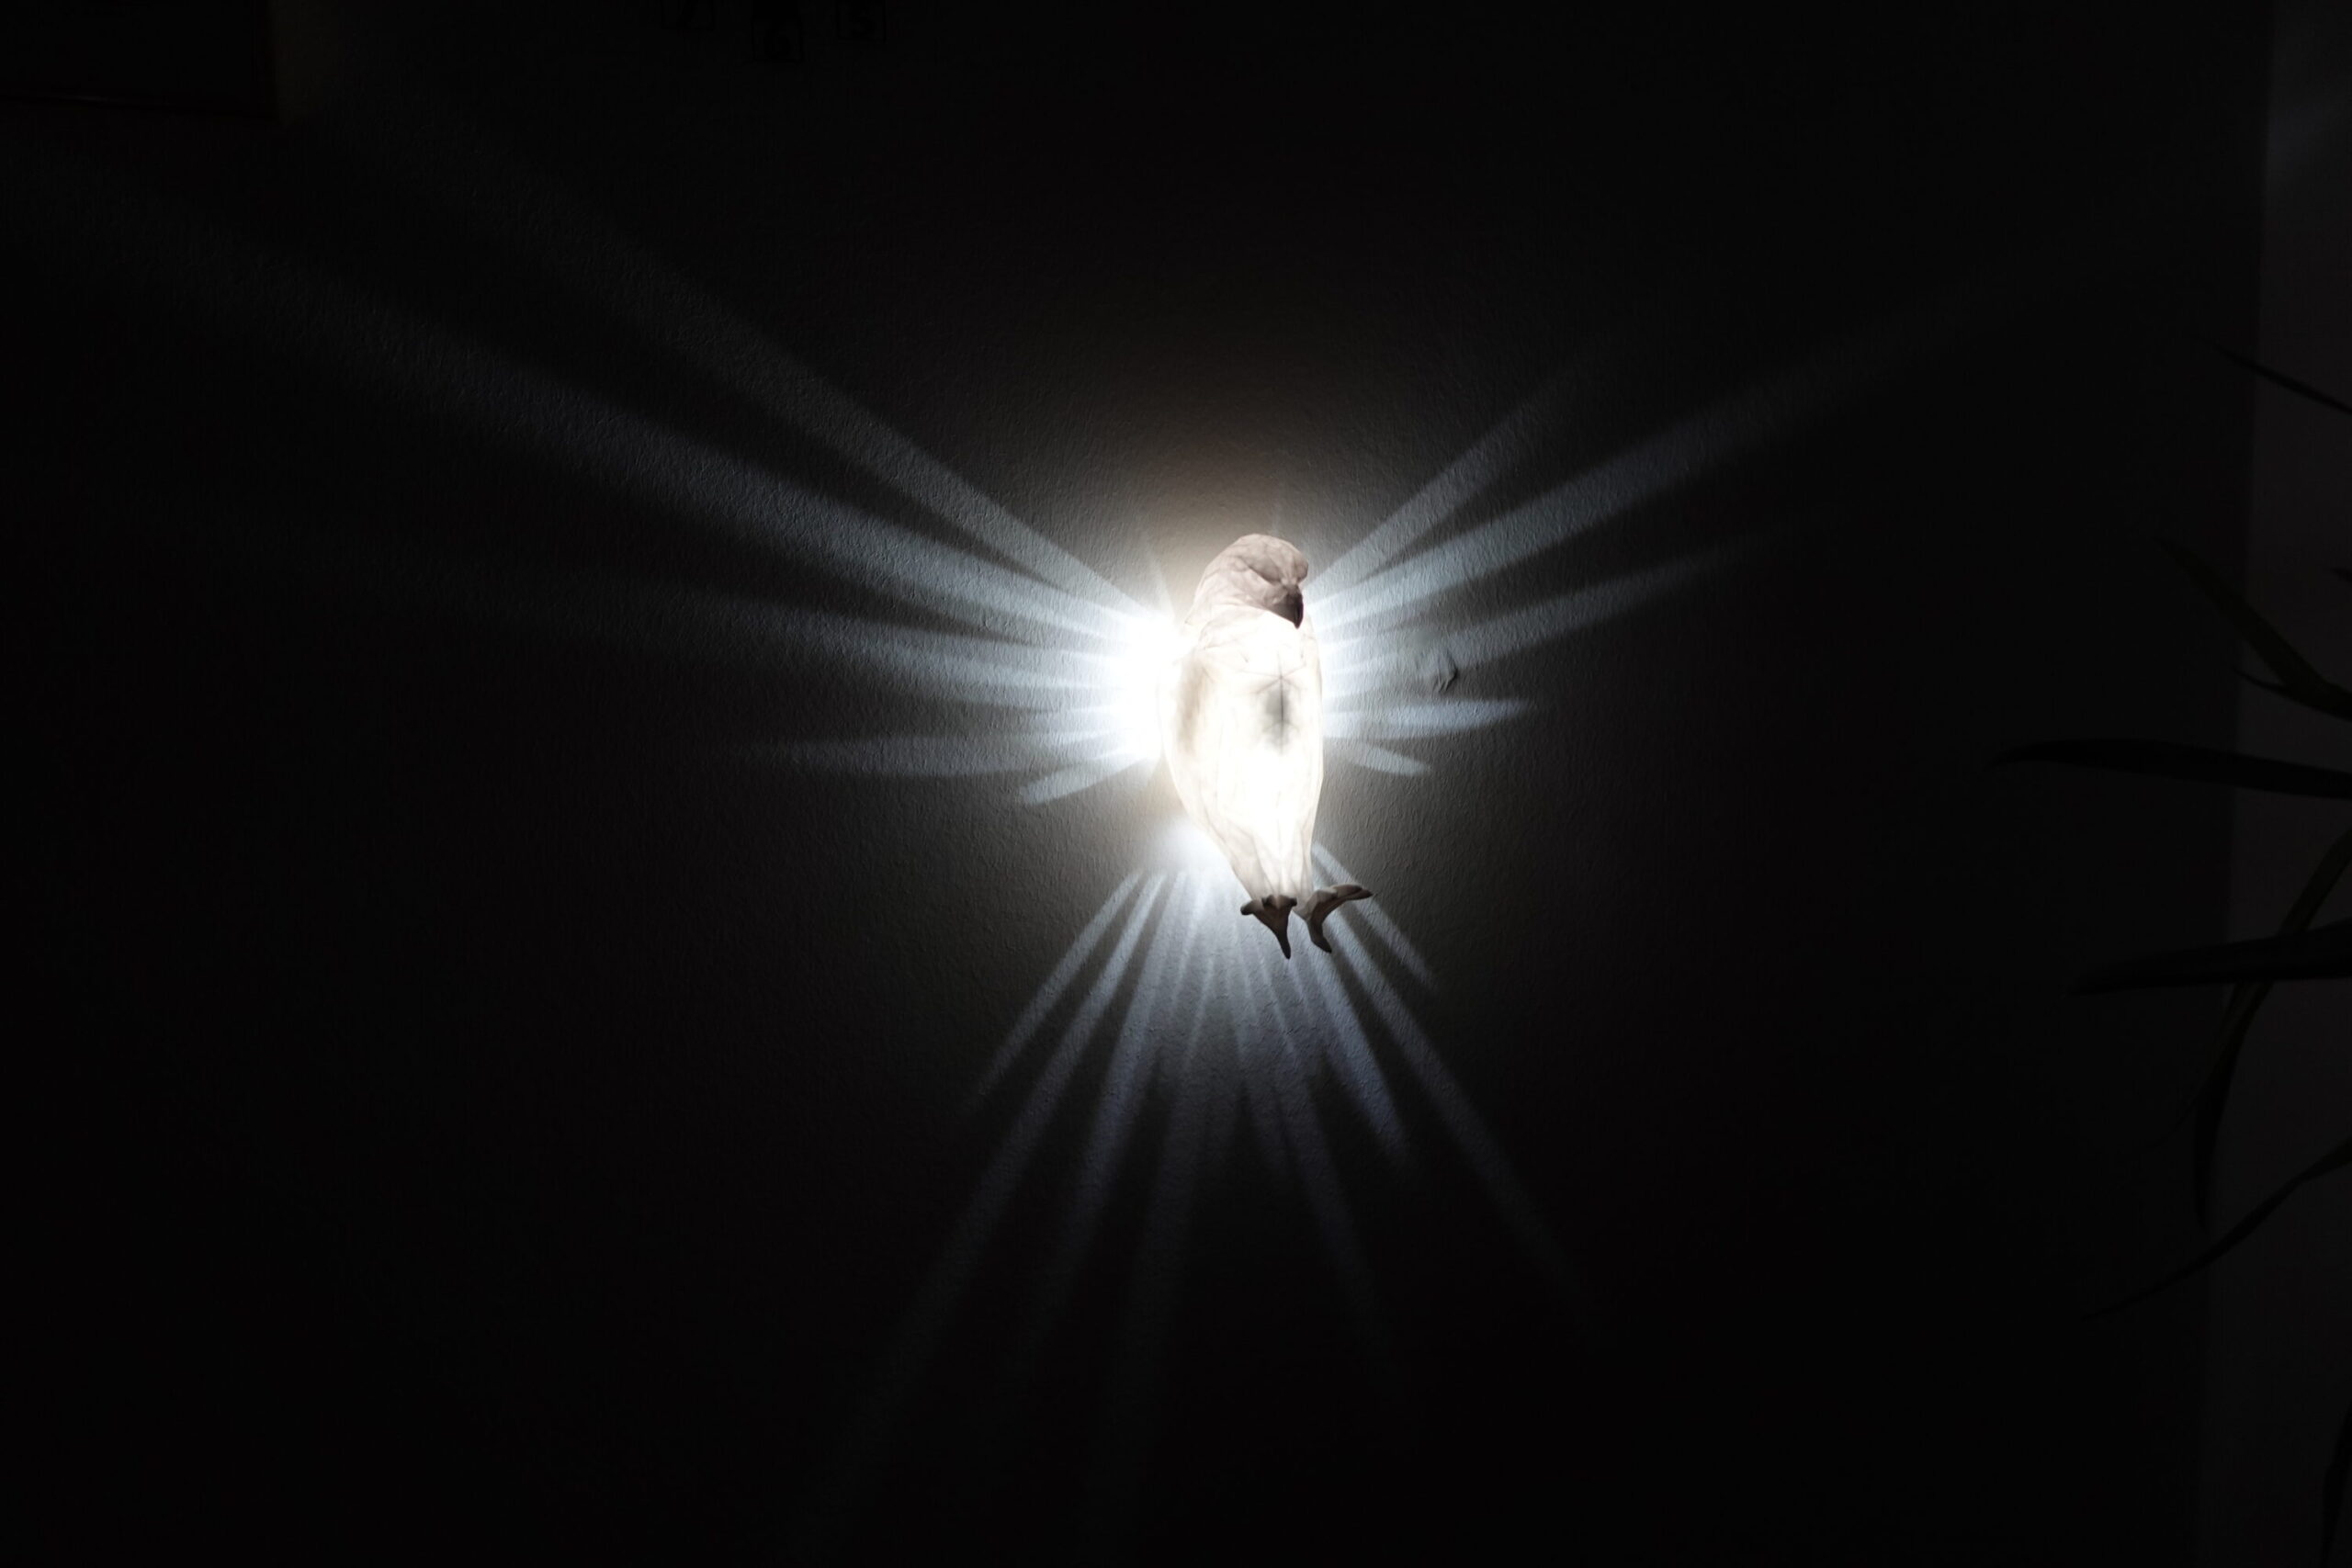 Pegasus LED Wandlampe - Flügel erstrahlen an der Wand - Pferdelampe  Nachtlicht Wandlicht